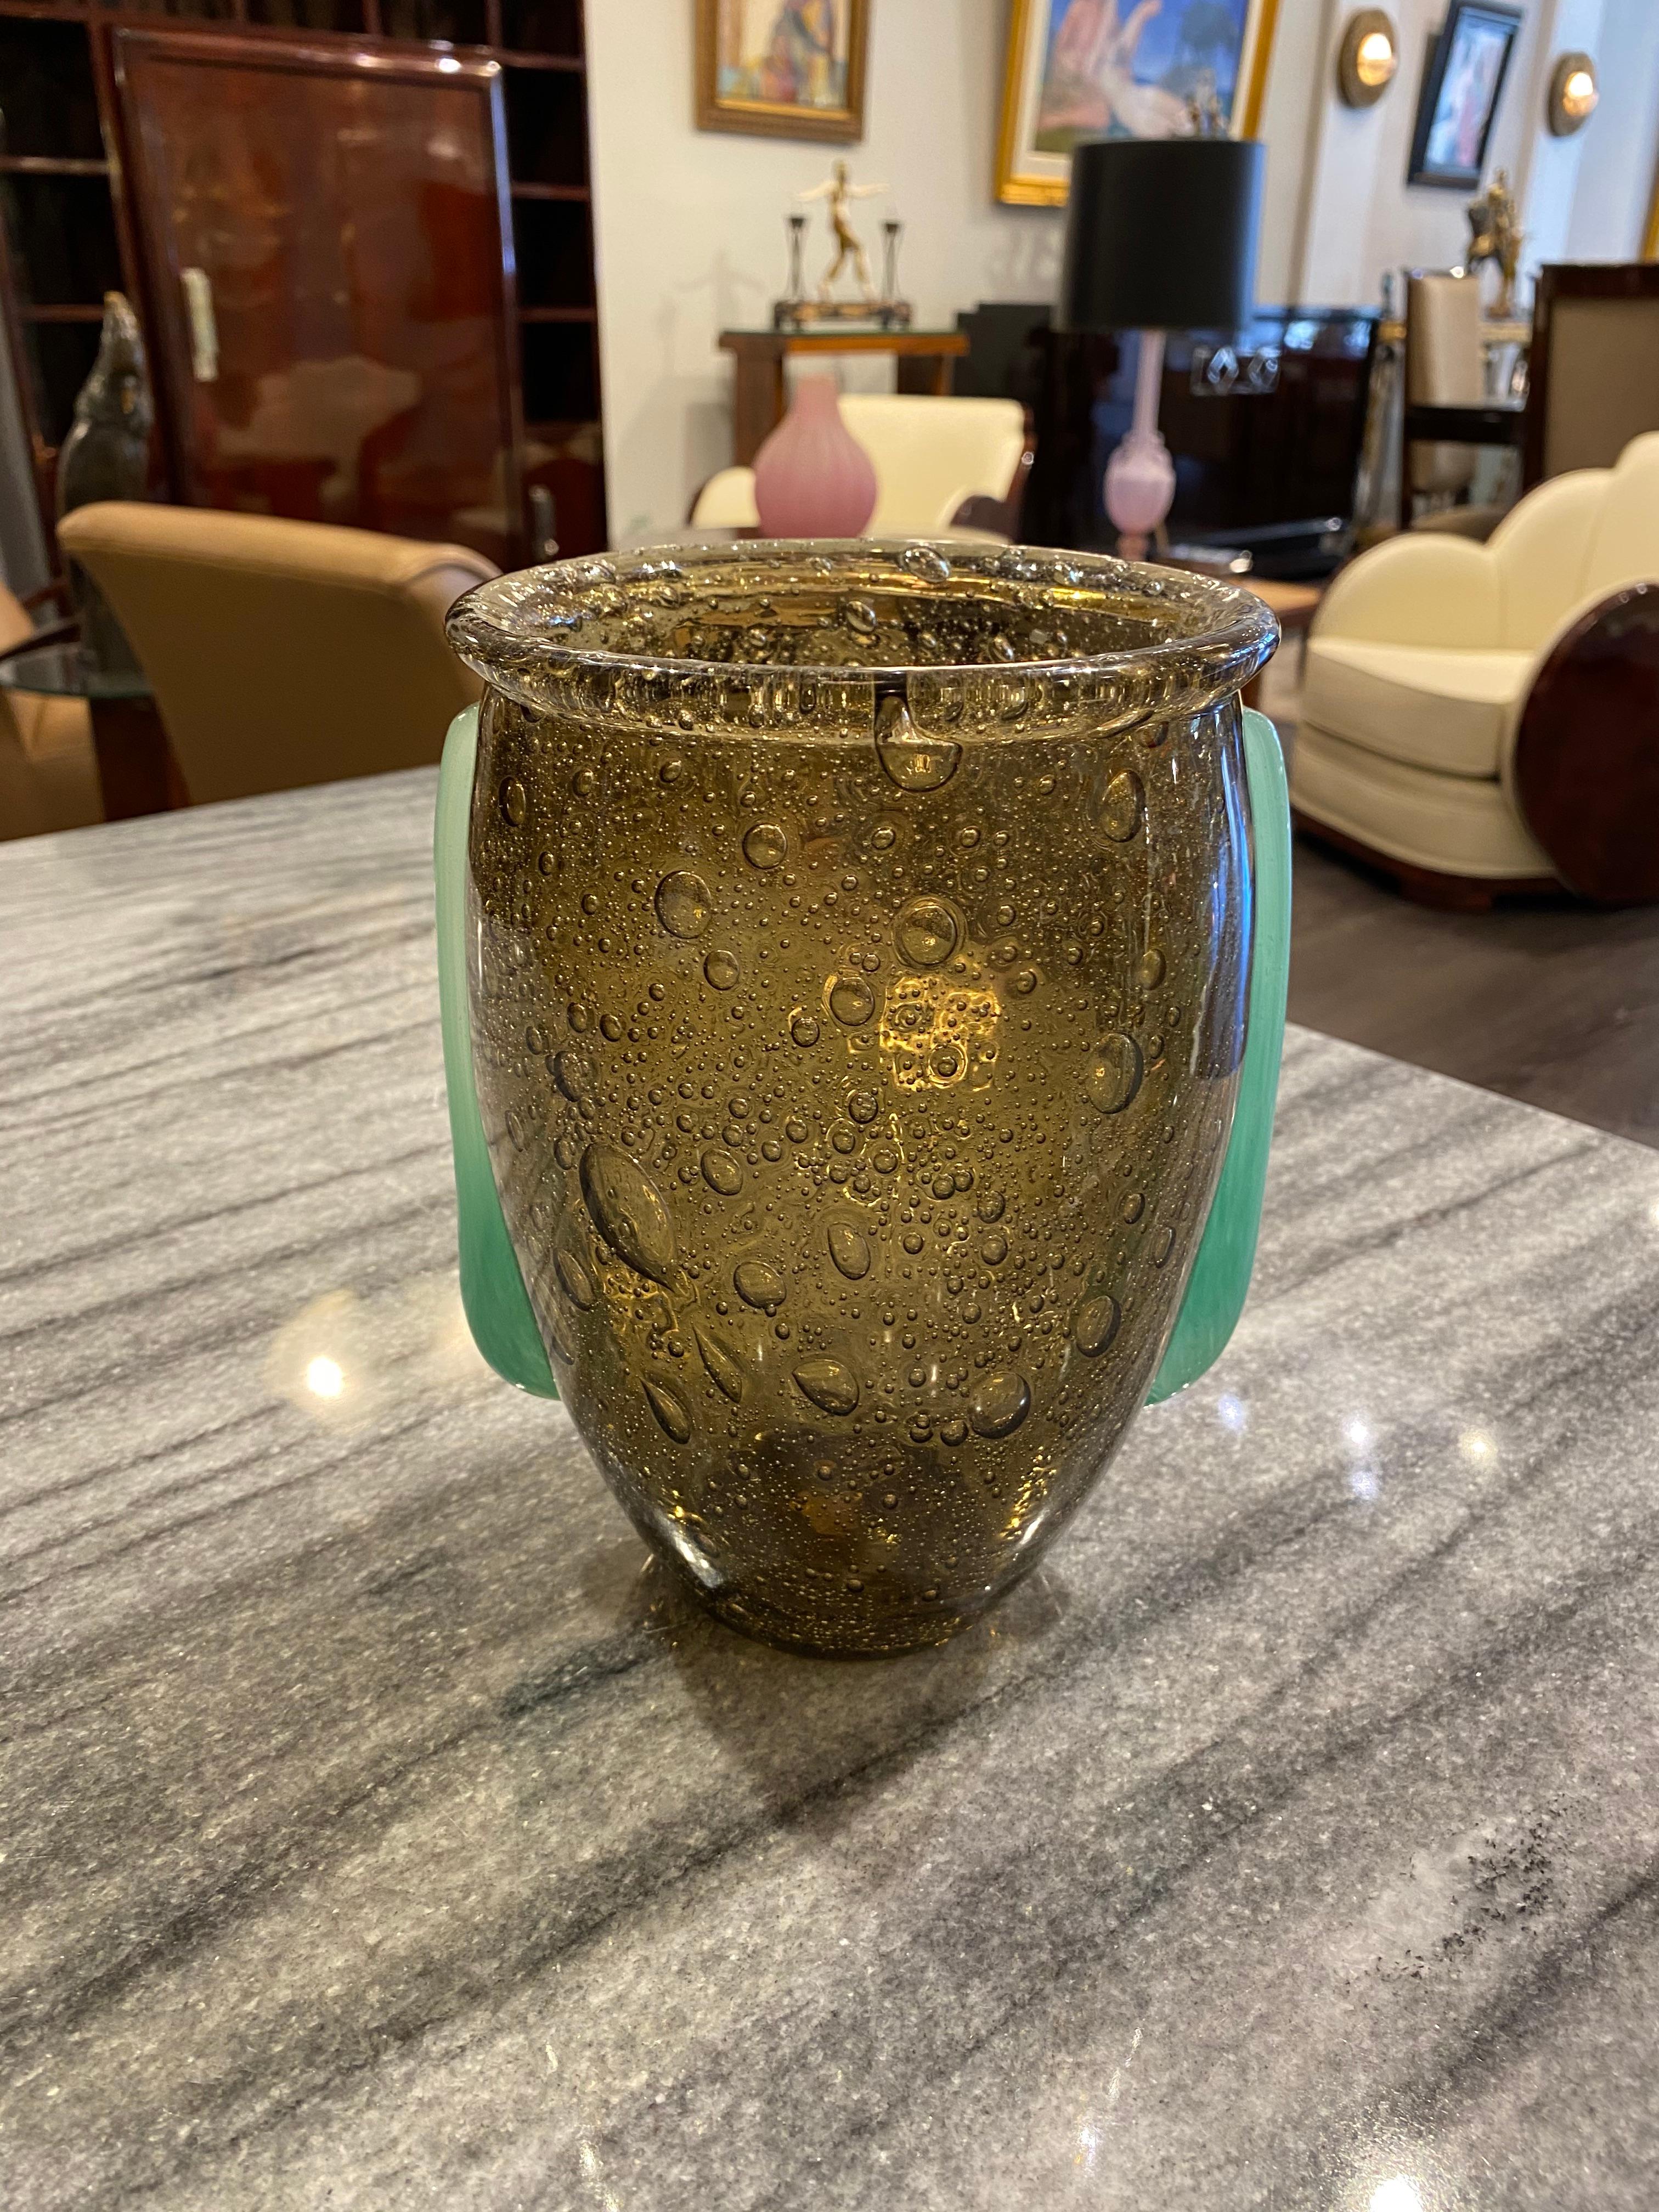 Un vase gris fumé avec un corps en verre bullé.  Des poignées/applications en verre poudré vert jade se trouvent de chaque côté du vase.  Cette pièce est très recherchée par les collectionneurs car il en existe très peu de nos jours.  Cette pièce